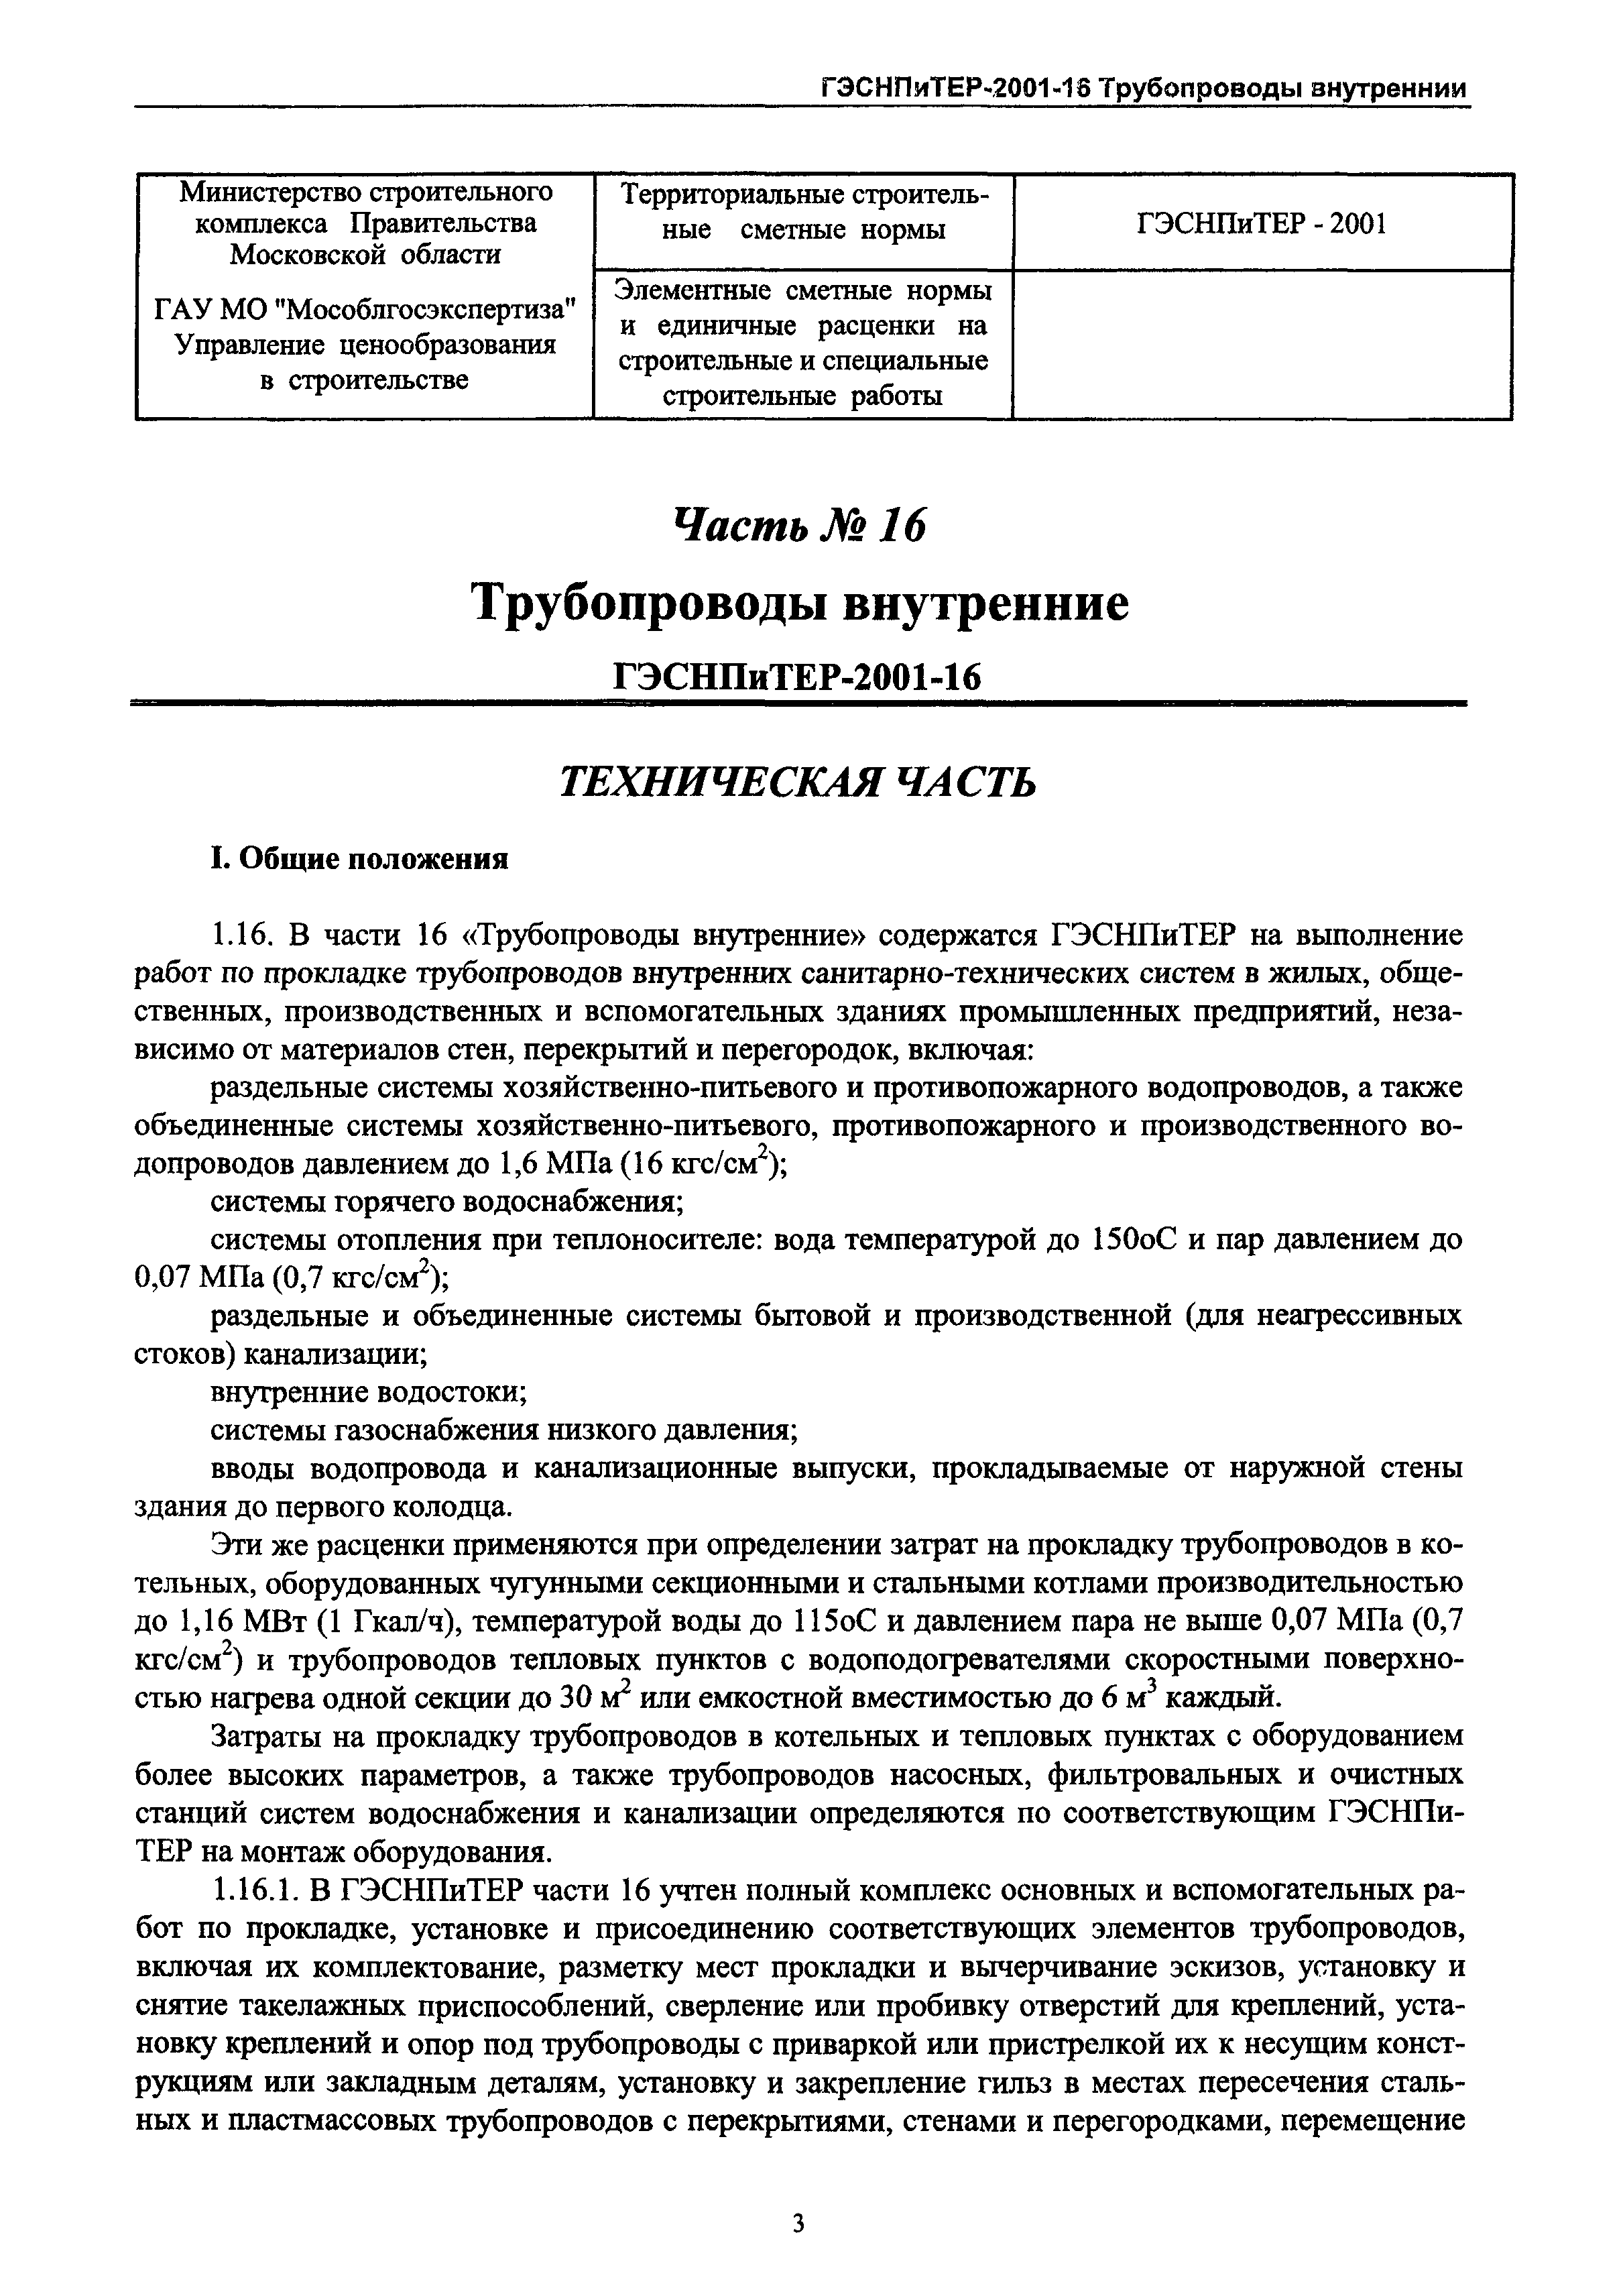 ГЭСНПиТЕР 2001-16 Московской области